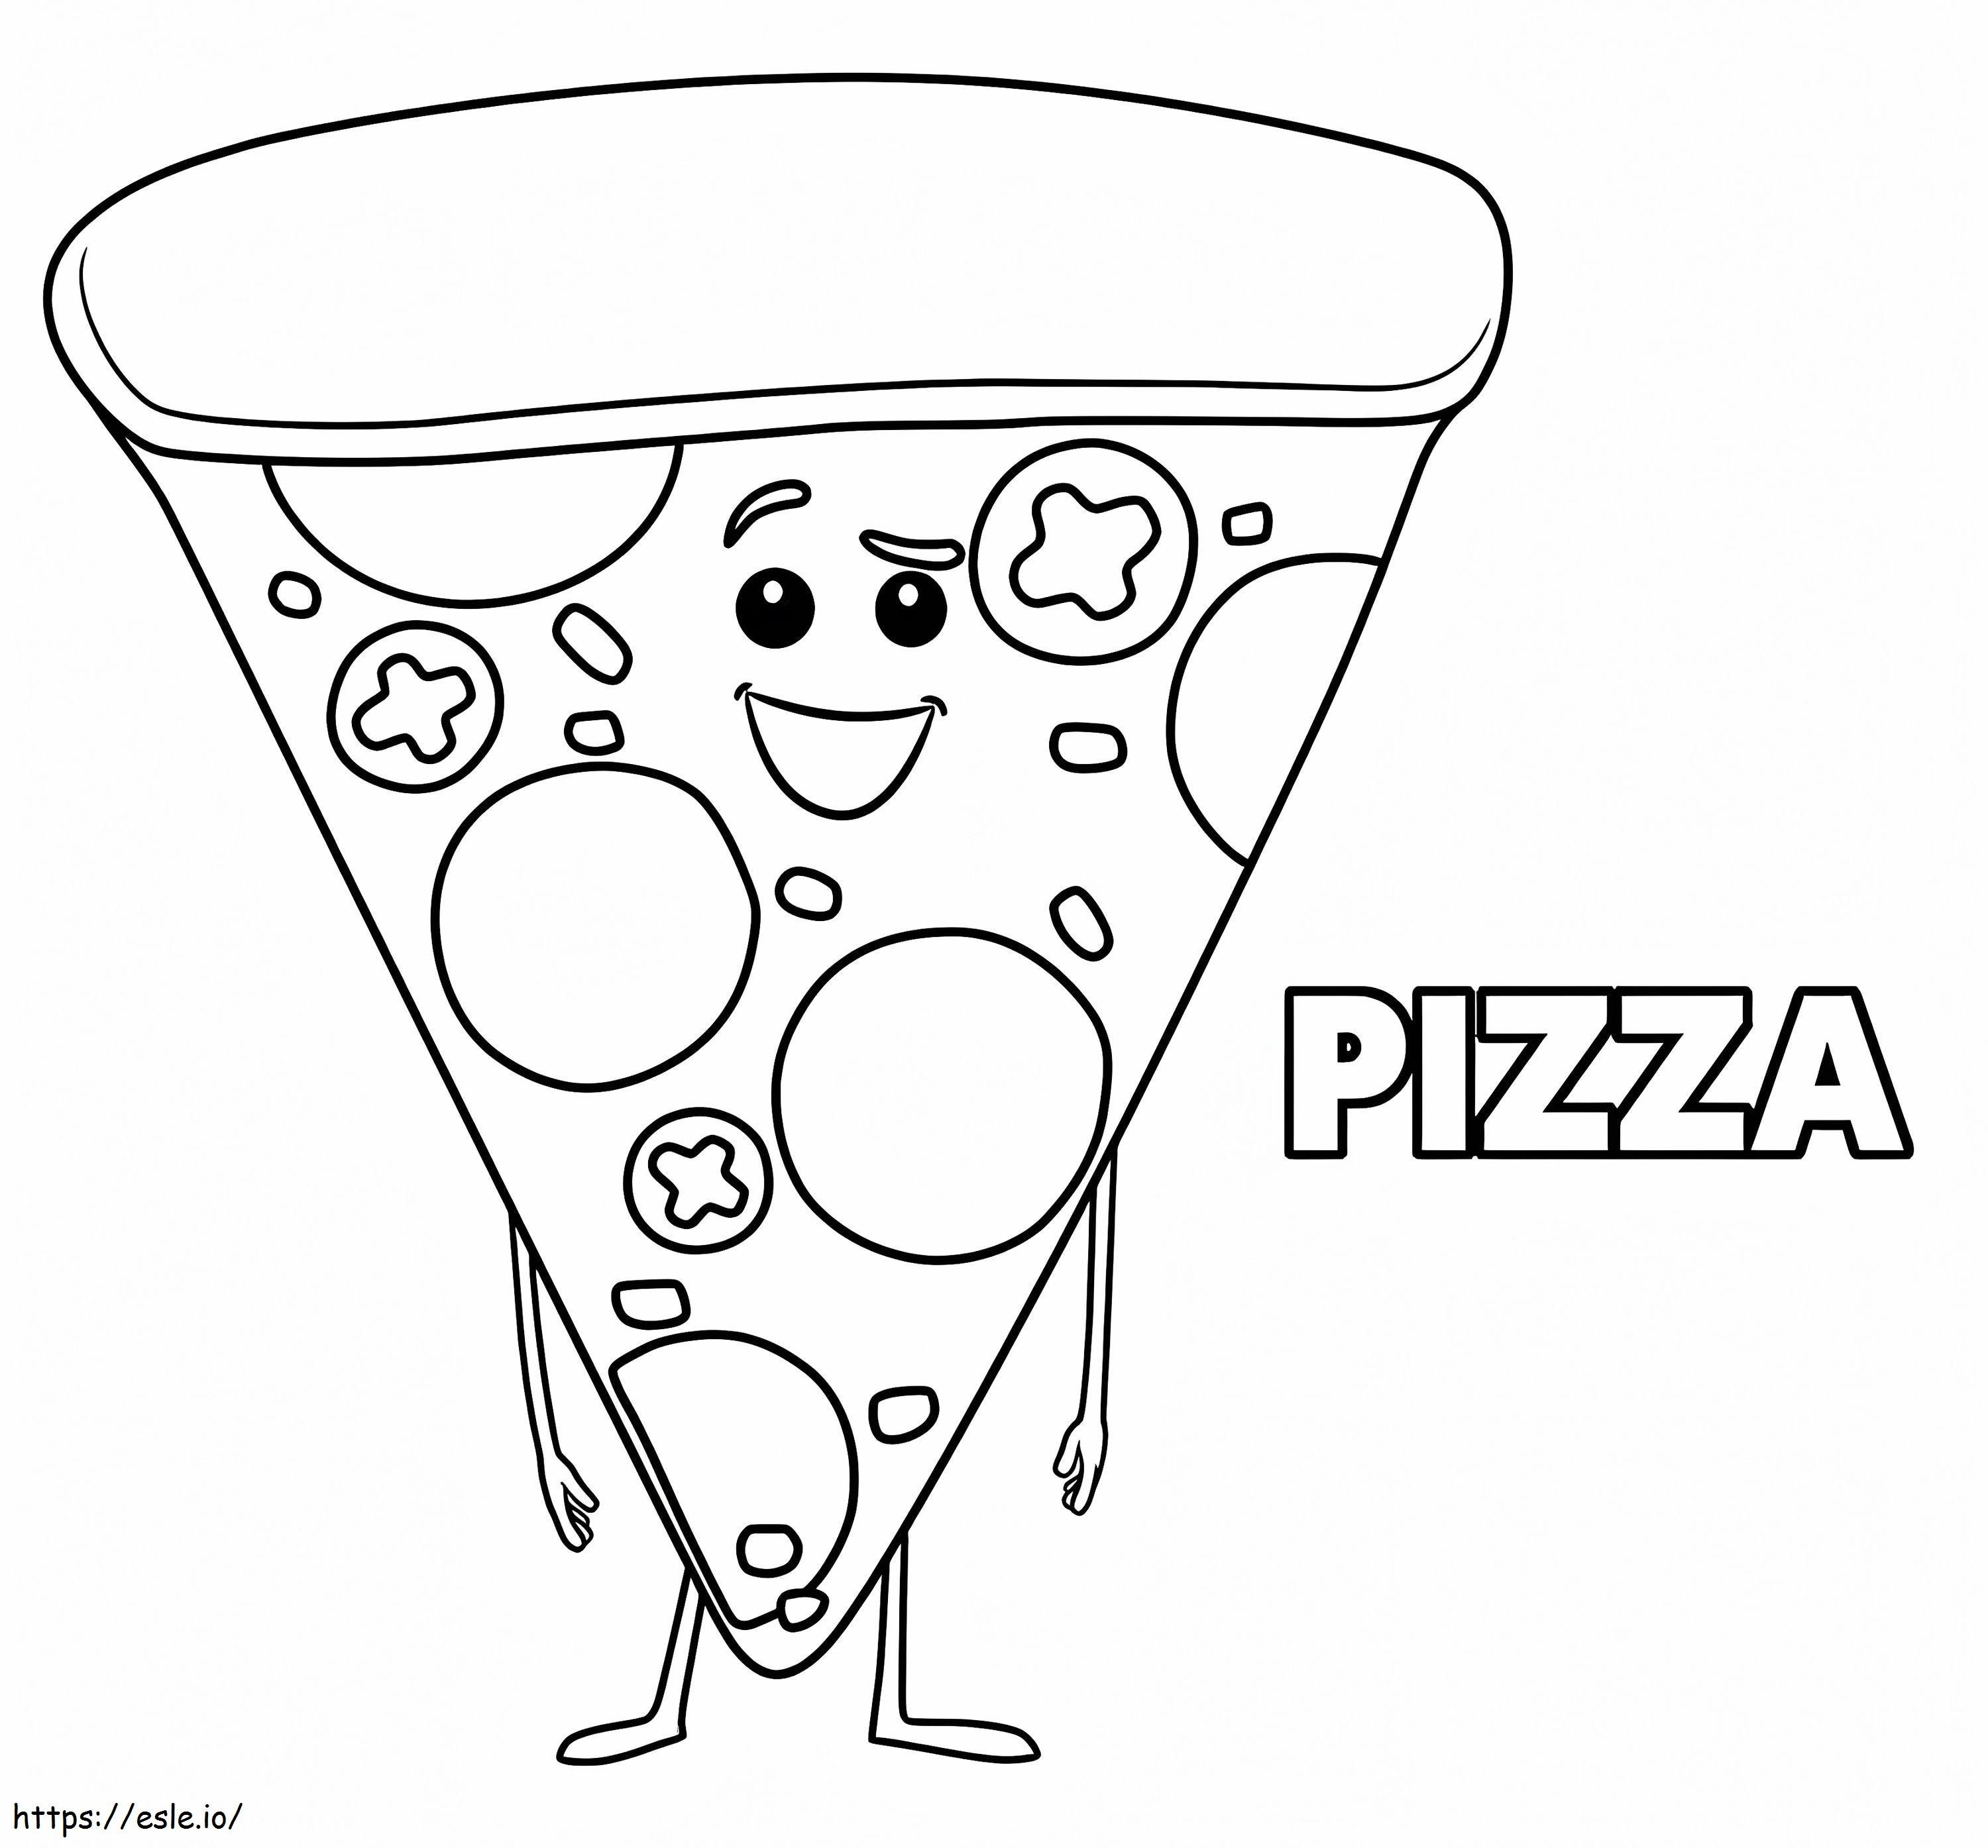 Pizza din filmul Emoji de colorat